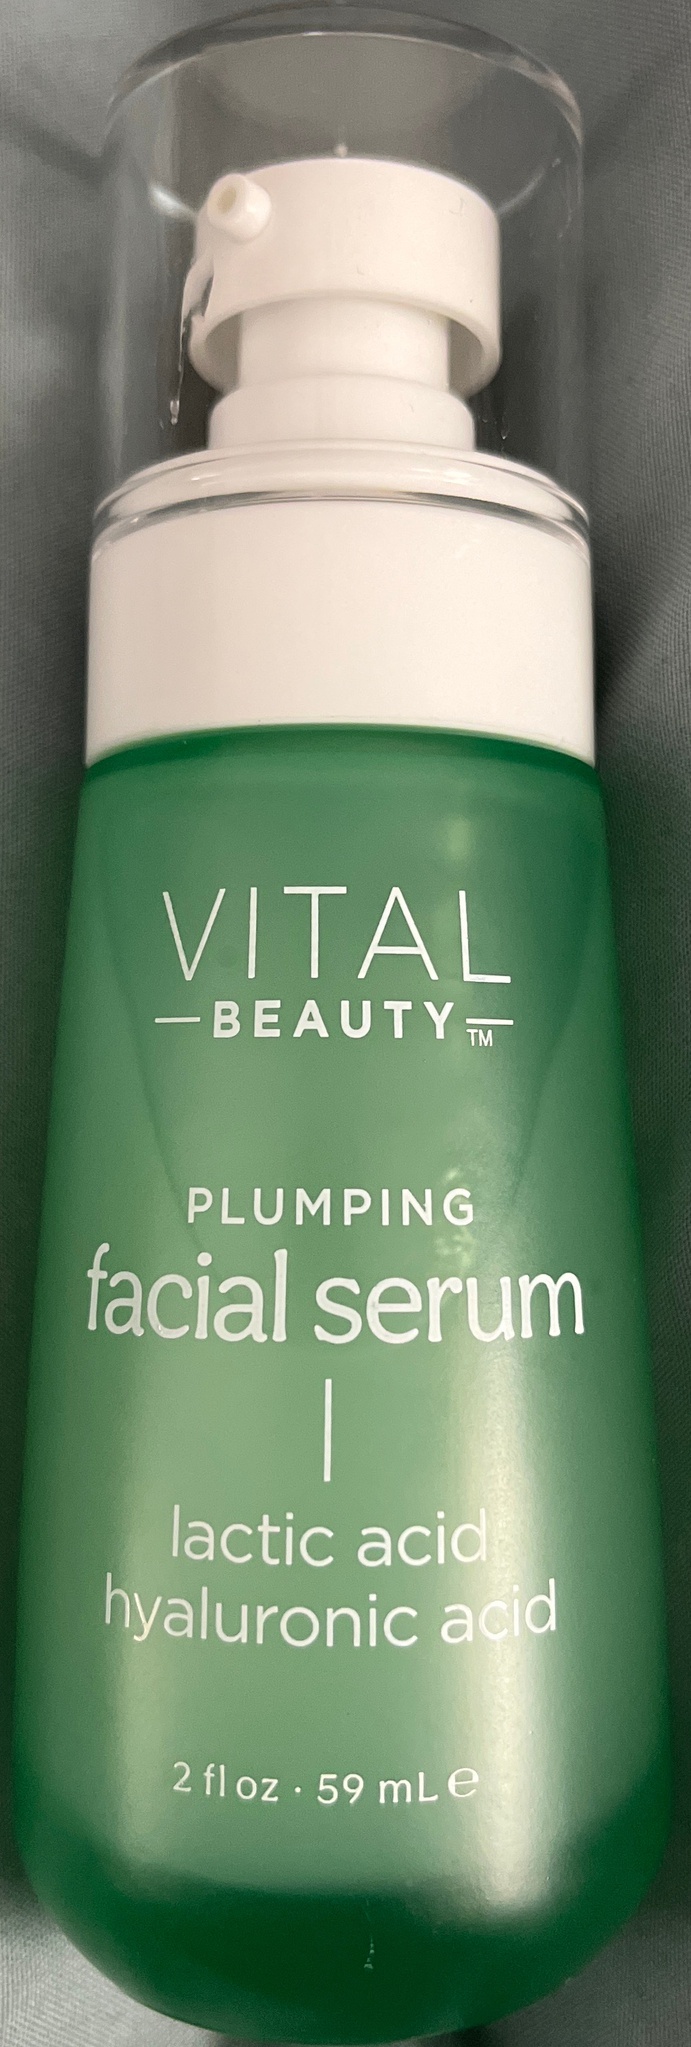 Vital Beauty Plumping Facial Serum